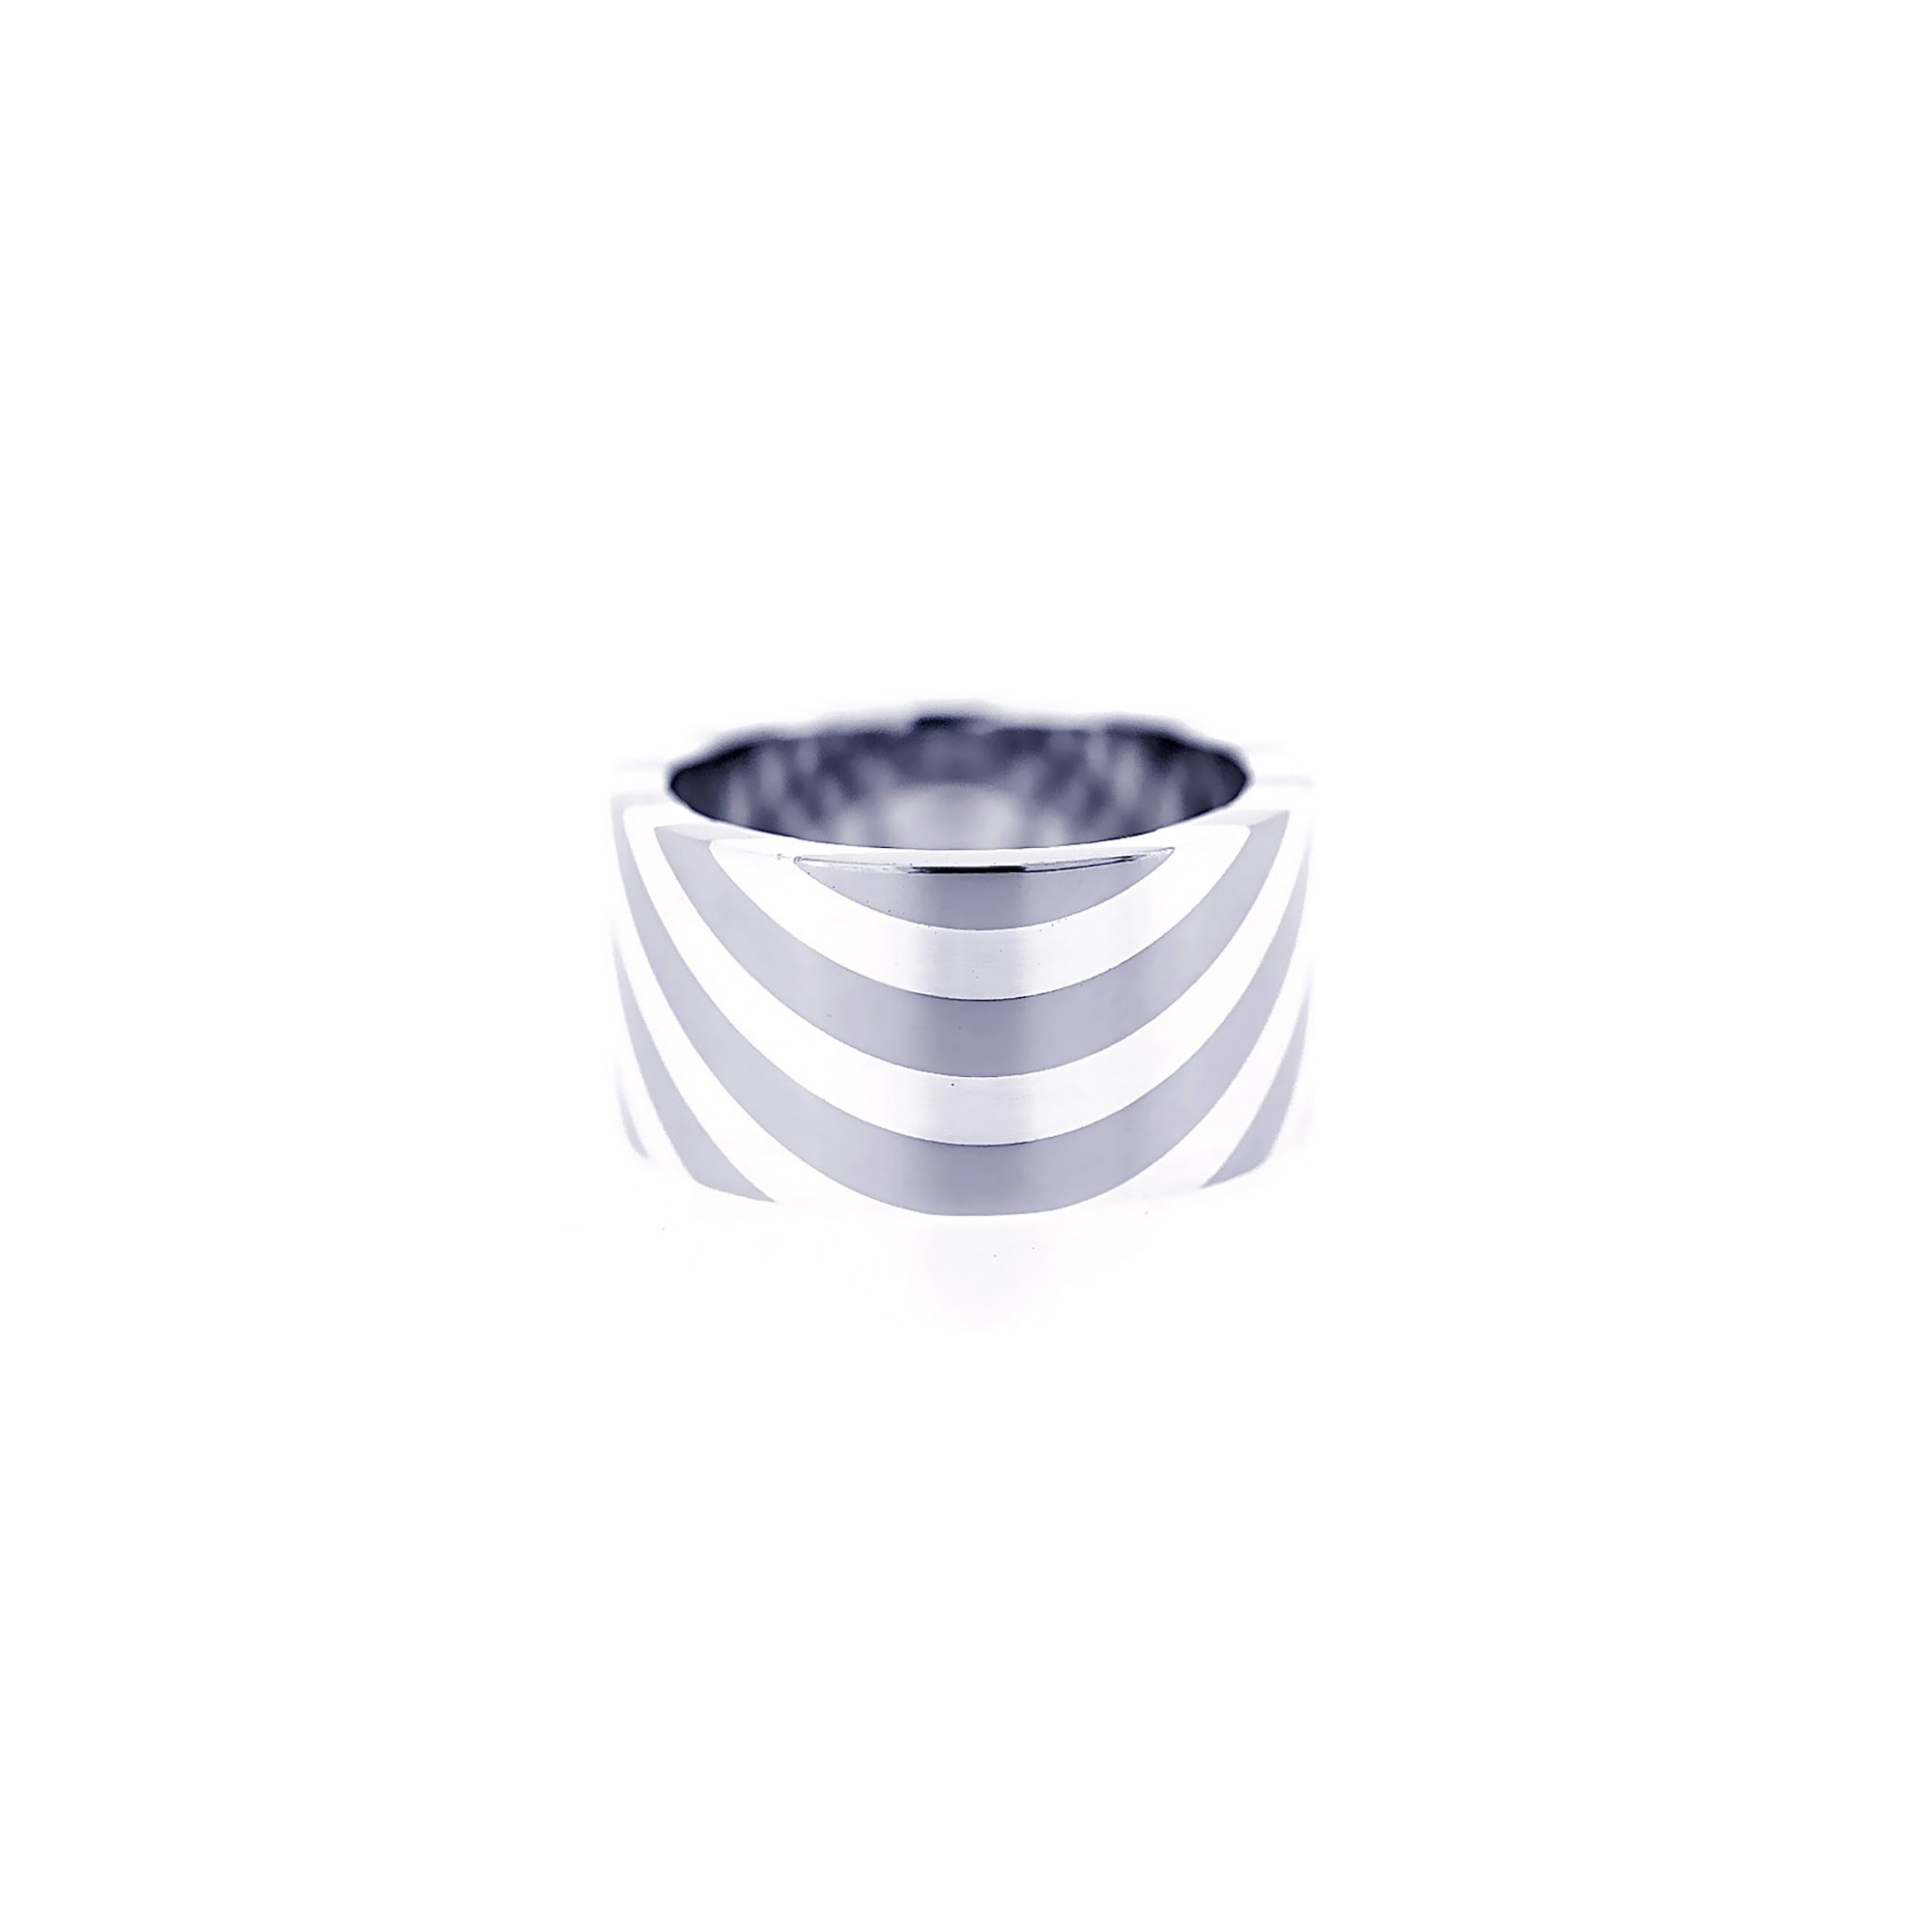 Dazzle Titanium Light Flat Fusion Ring AG413